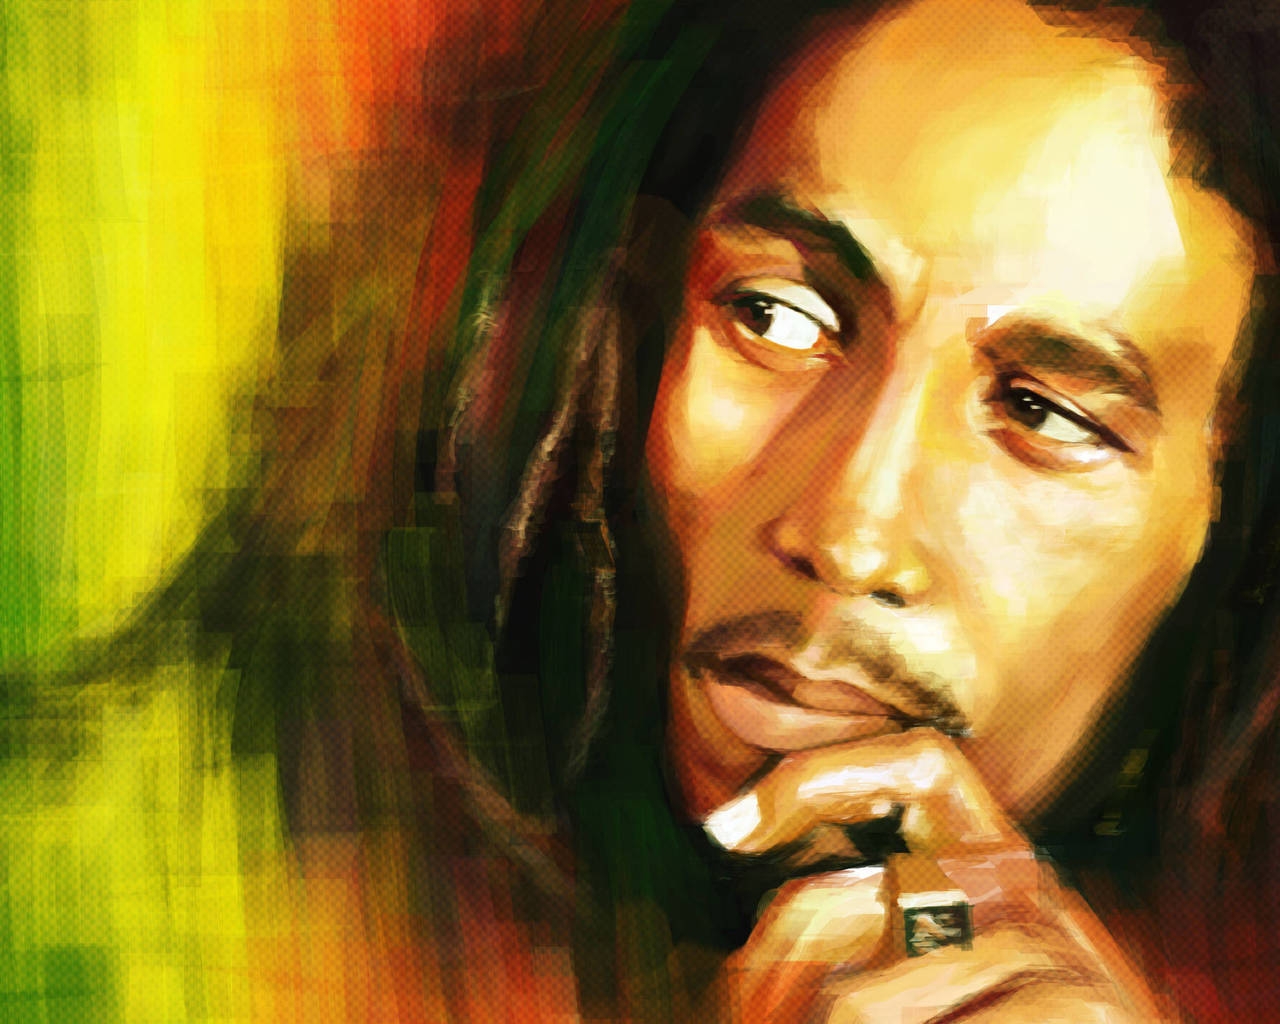 Bob Marley Artwork for 1280 x 1024 resolution